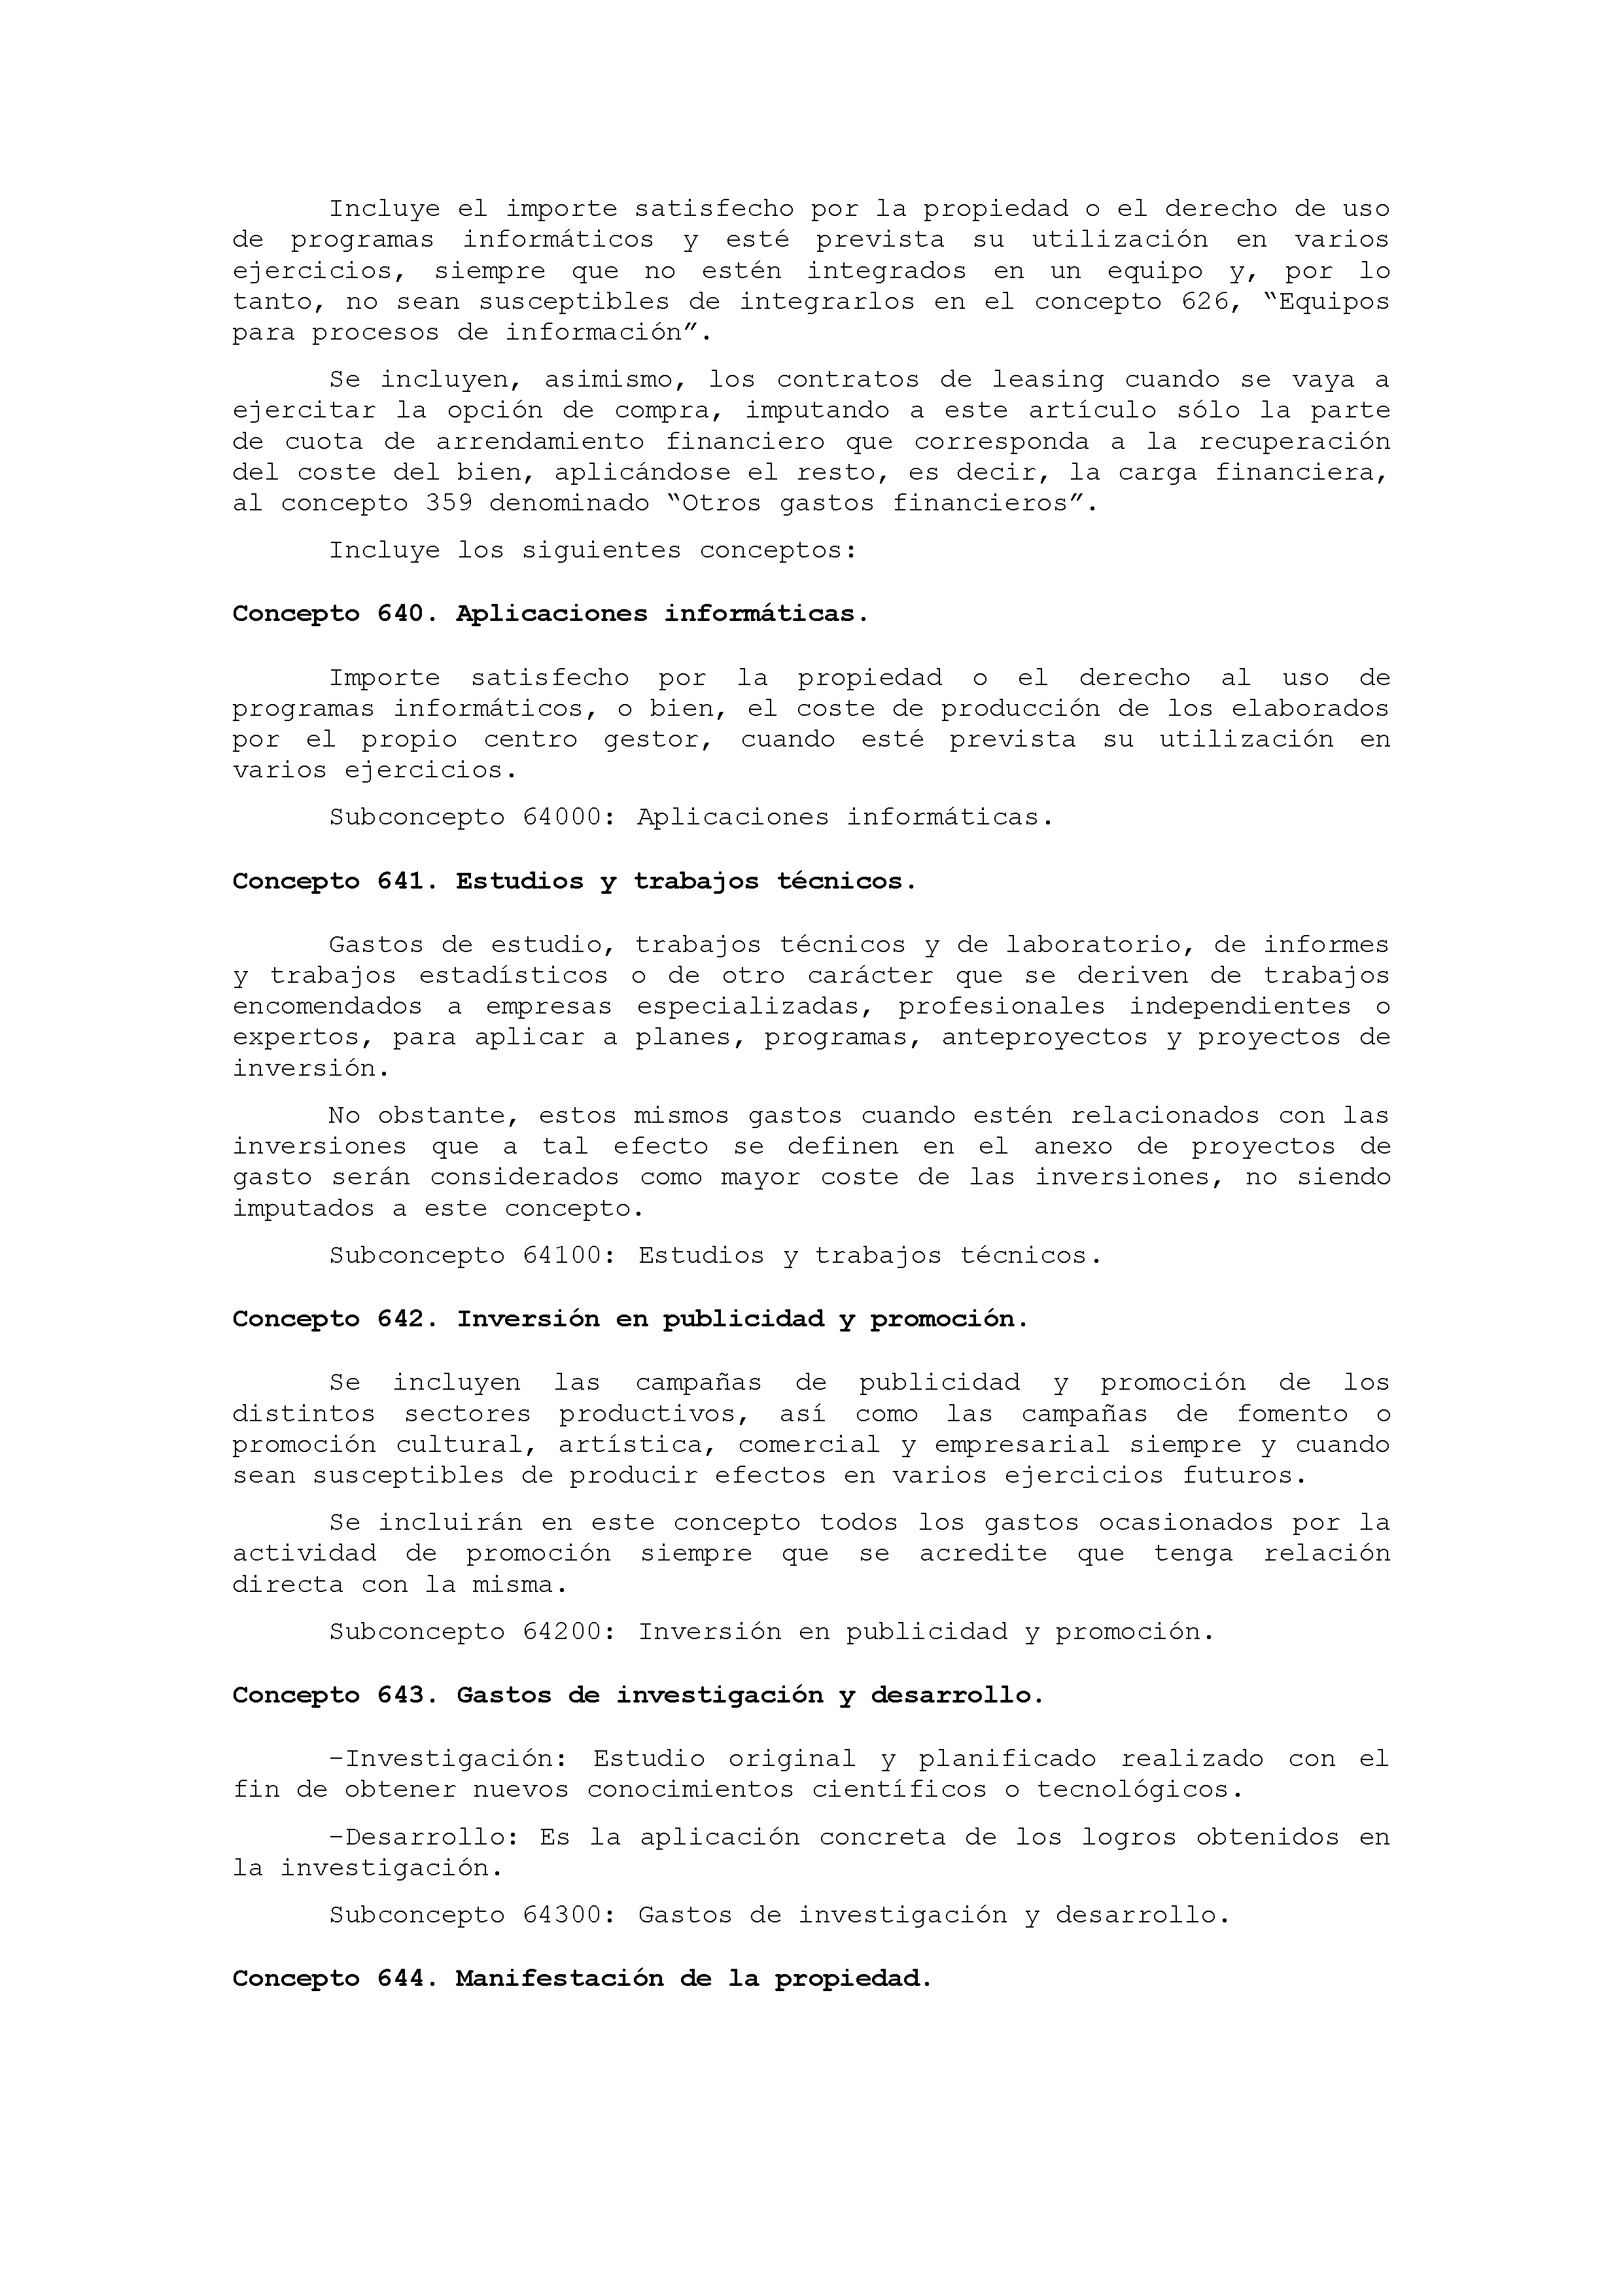 ANEXO IX CÓDIGO DE LA CLASIFICACIÓN ECONÓMICA DE LOS GASTOS PÚBLICOS Pag 39